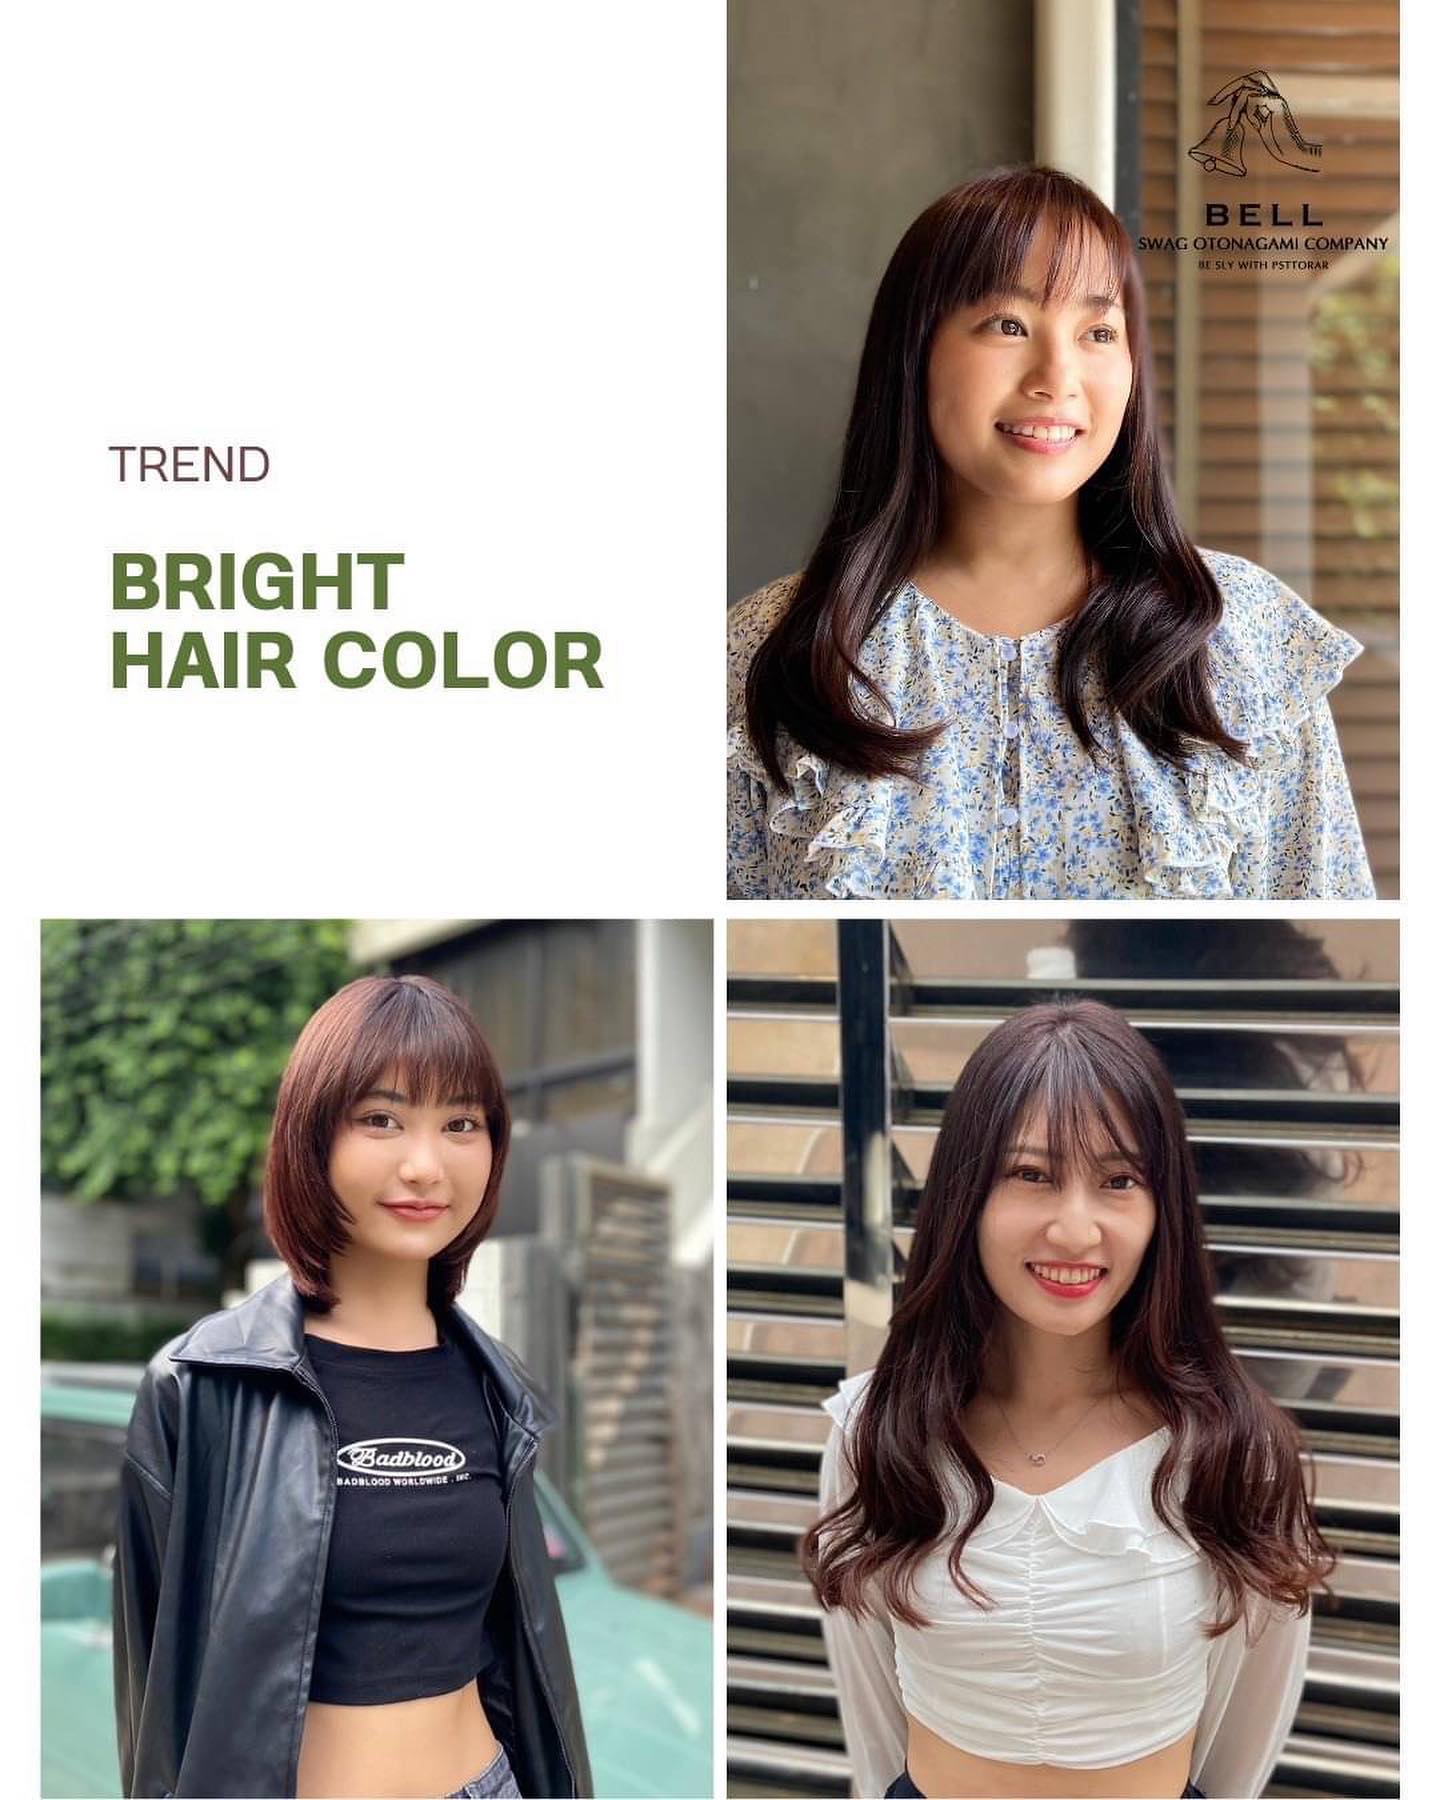 Trend
Bright Hair Color  สามารถติดต่อสอบถามและจองคิวมาได้เลยนะคะ 
TEL 02-000-3001  F.B BELL Otonagami salon  LINE ID@skk6845h  #ร้านทำผมญี่ปุ่น #ร้านทำสีผมไม่เสีย #ออกแบบทรงผม #สีผมสุดฮิต  #สีผมสวยๆ #ผมสวย #ตัดผม #สีผมสไตล์ญี่ปุ่น #ทรงผมสวยๆ #ช่างญี่ปุ่น